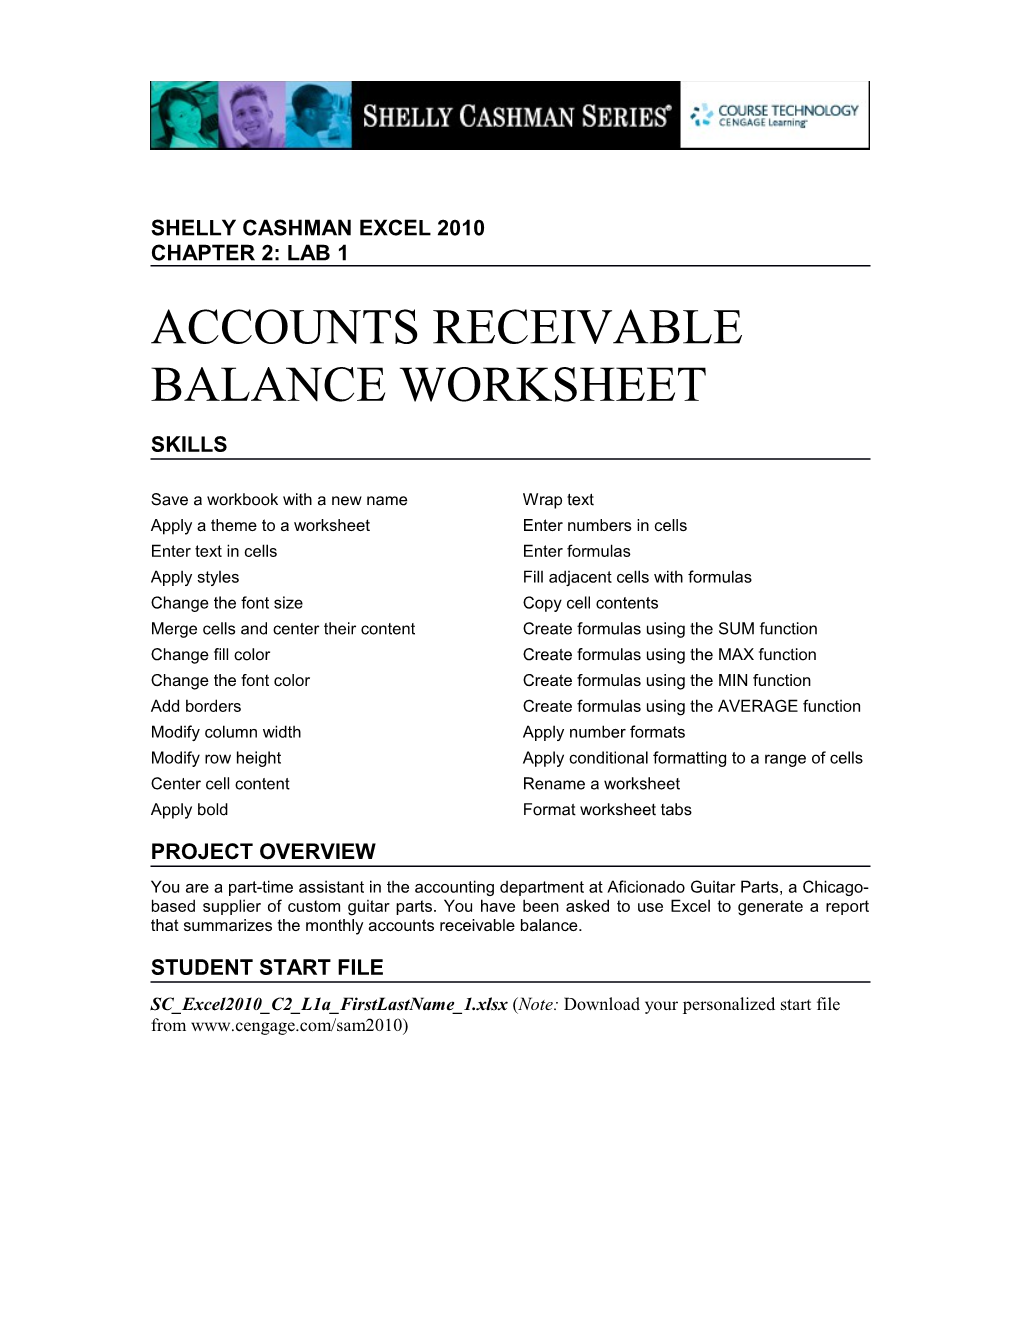 Accounts Receivable Balance Worksheet